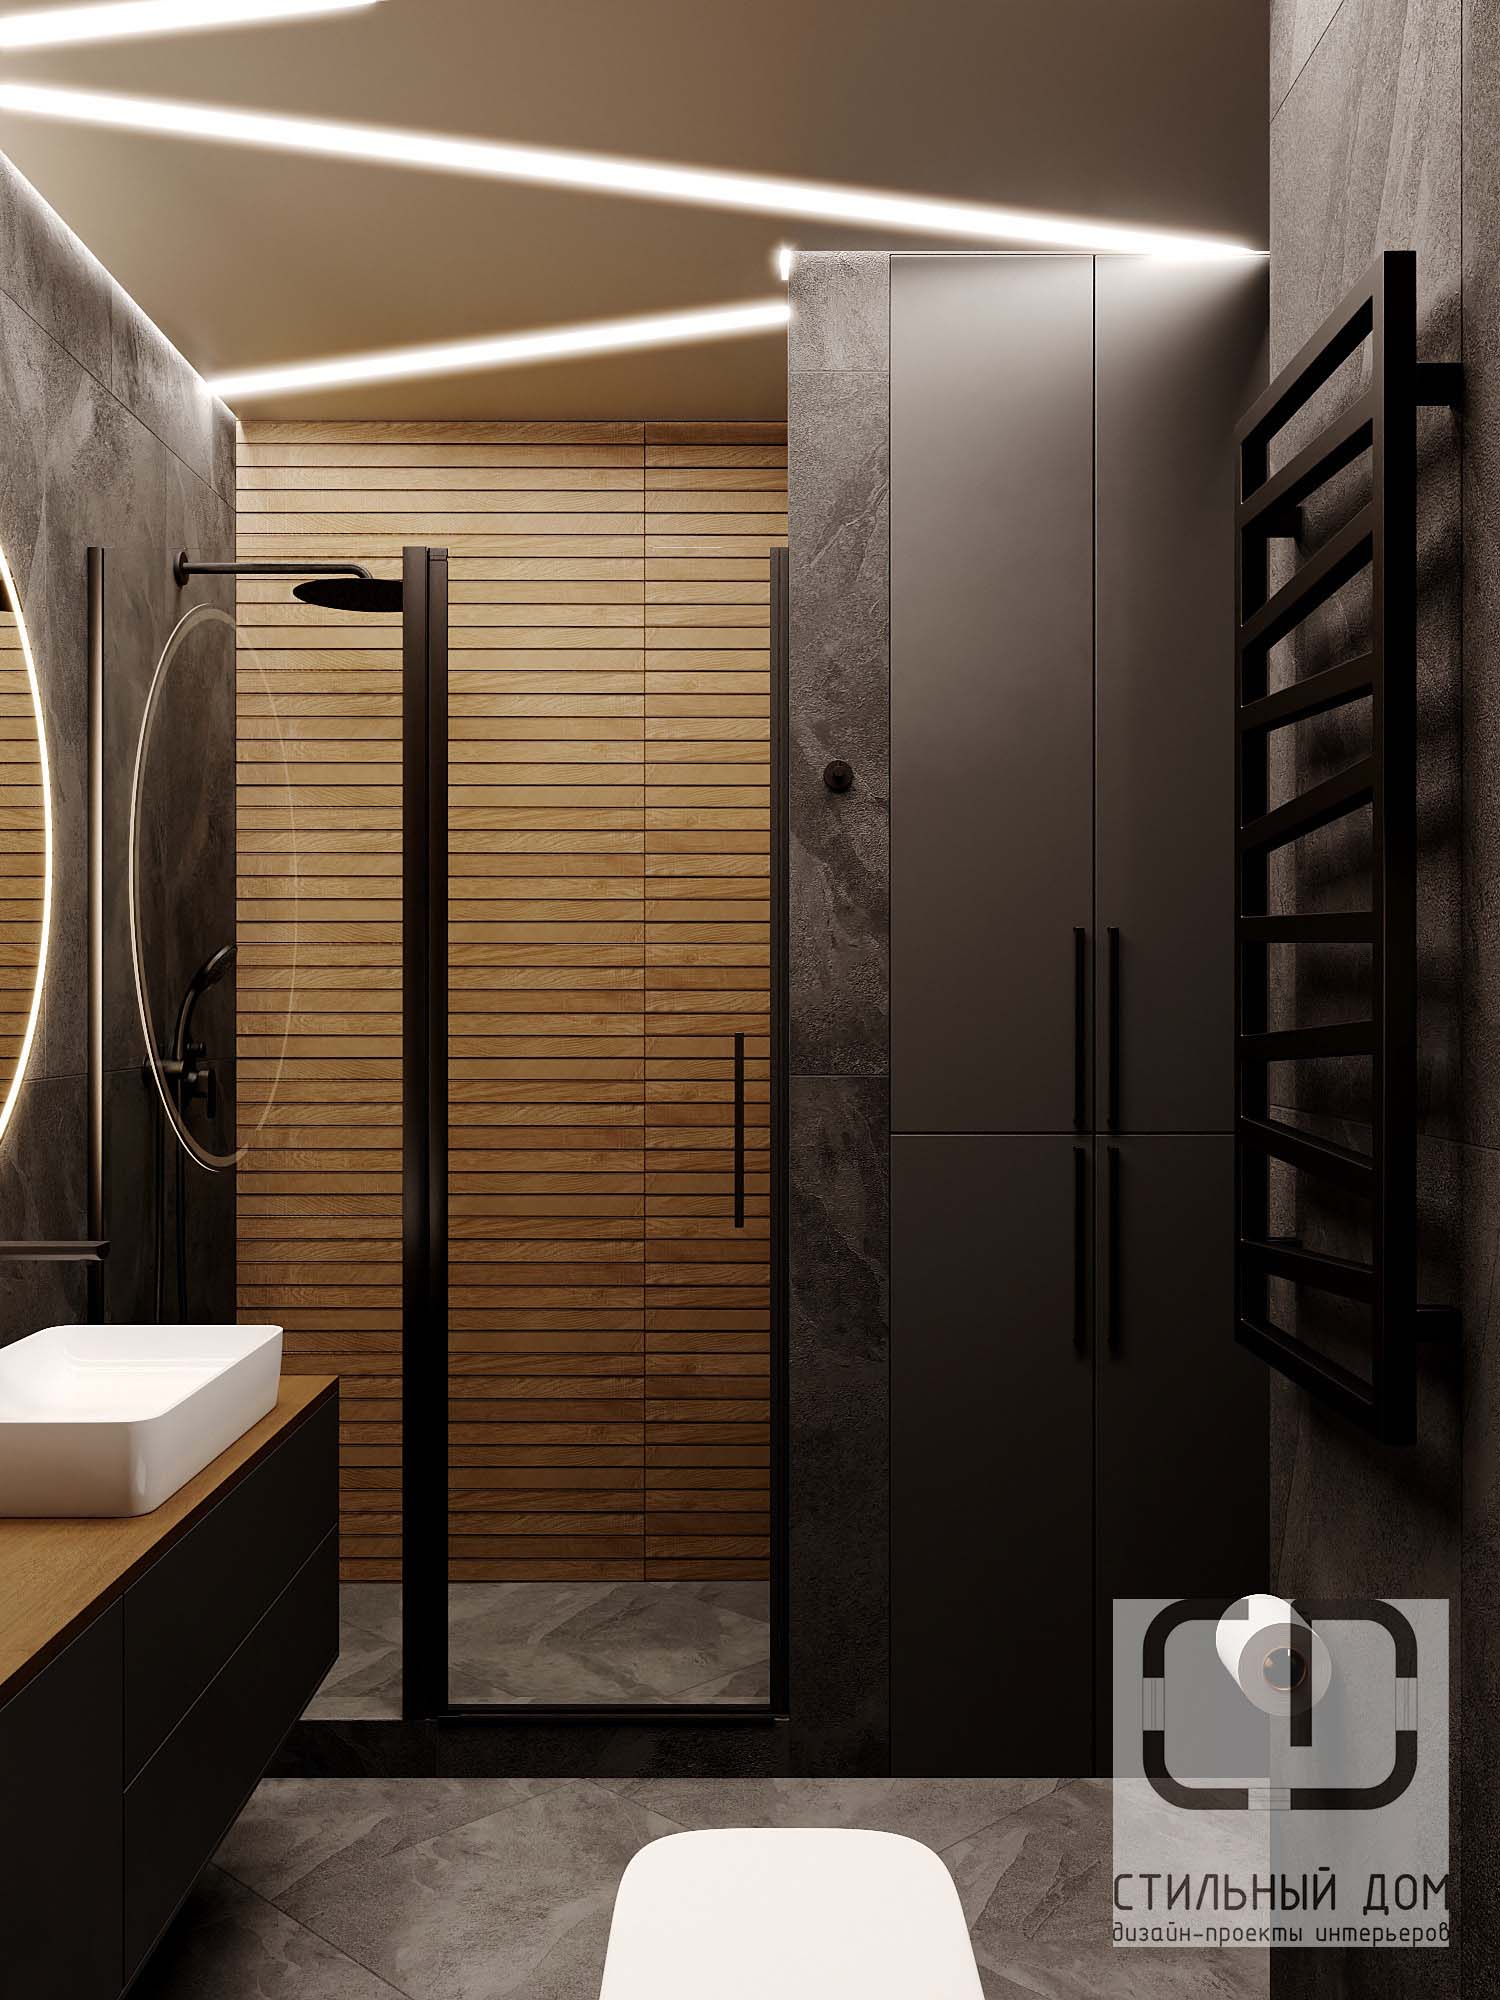 Душевая кабина или полноразмерная ванна: Как сделать вашу ванную комнату комфортной и современной